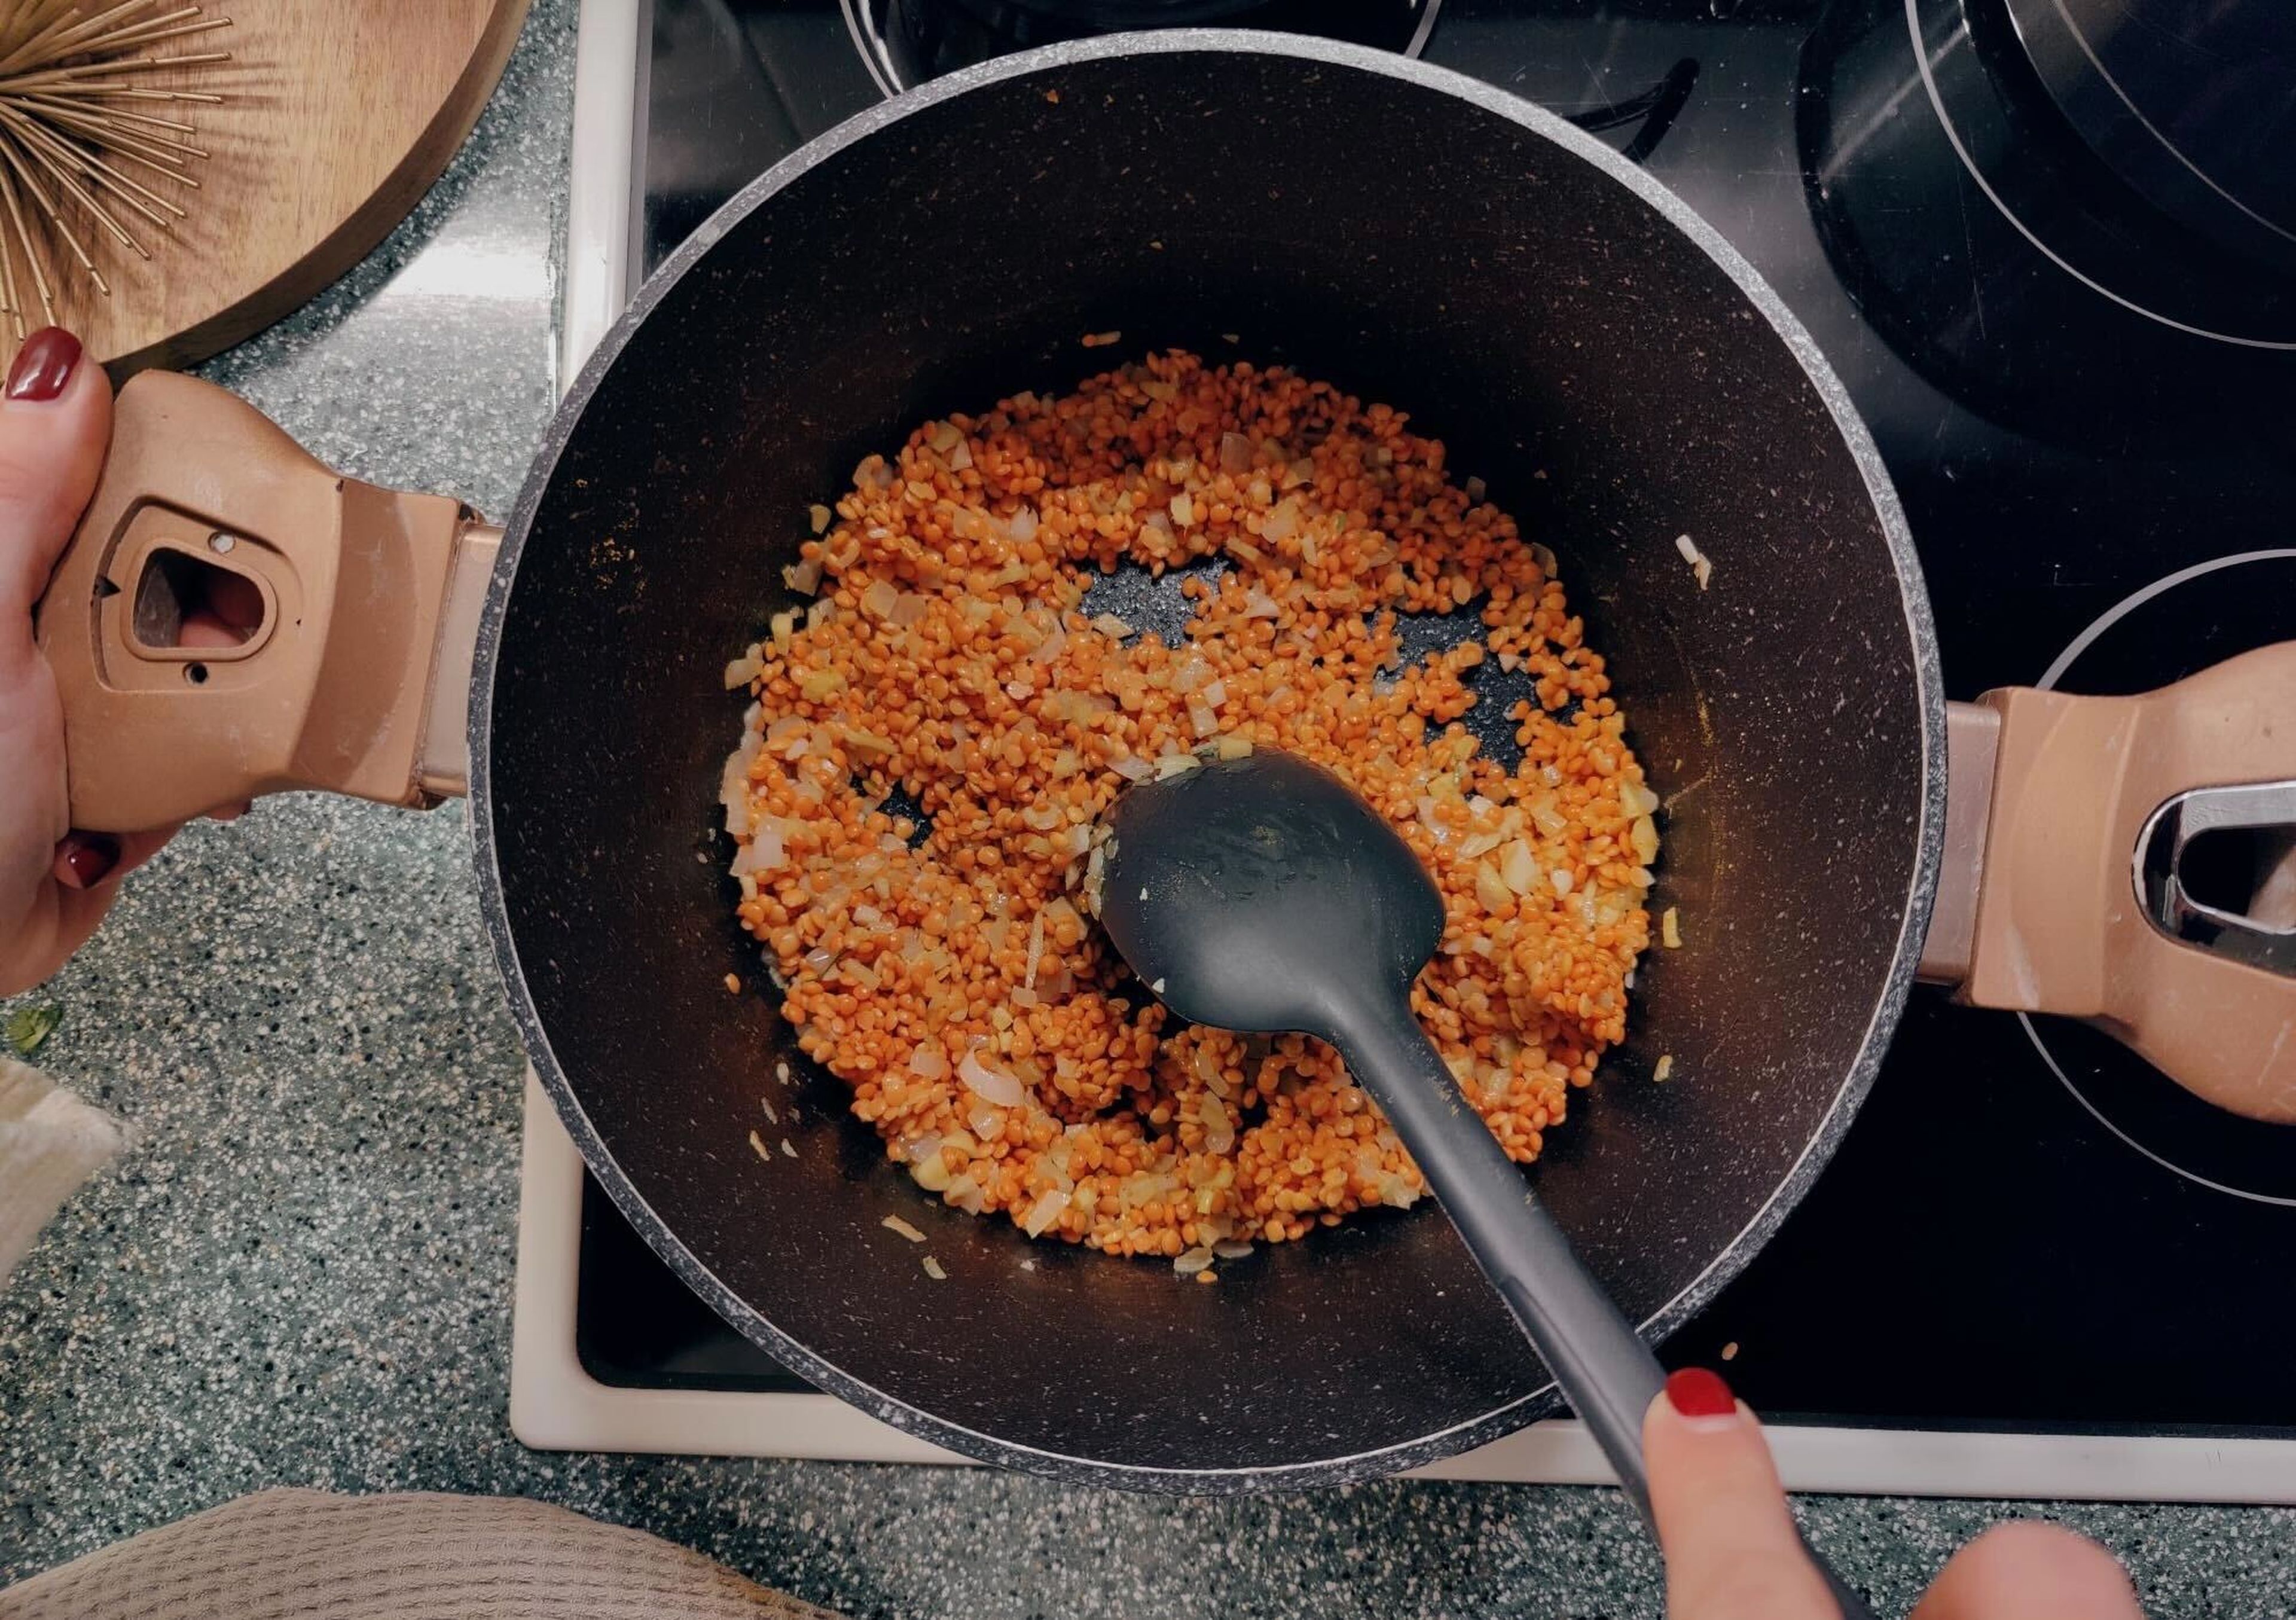 Öl in eine Pfanne geben und Zwiebeln bei mittlerer Hitze glasig dünsten. Dann Curry, Knoblauch, Chiliflocken und Ingwer hinzufügen und ca. 2 Min. anbraten. Linsen zufügen und ebenfalls kurz mitbraten.